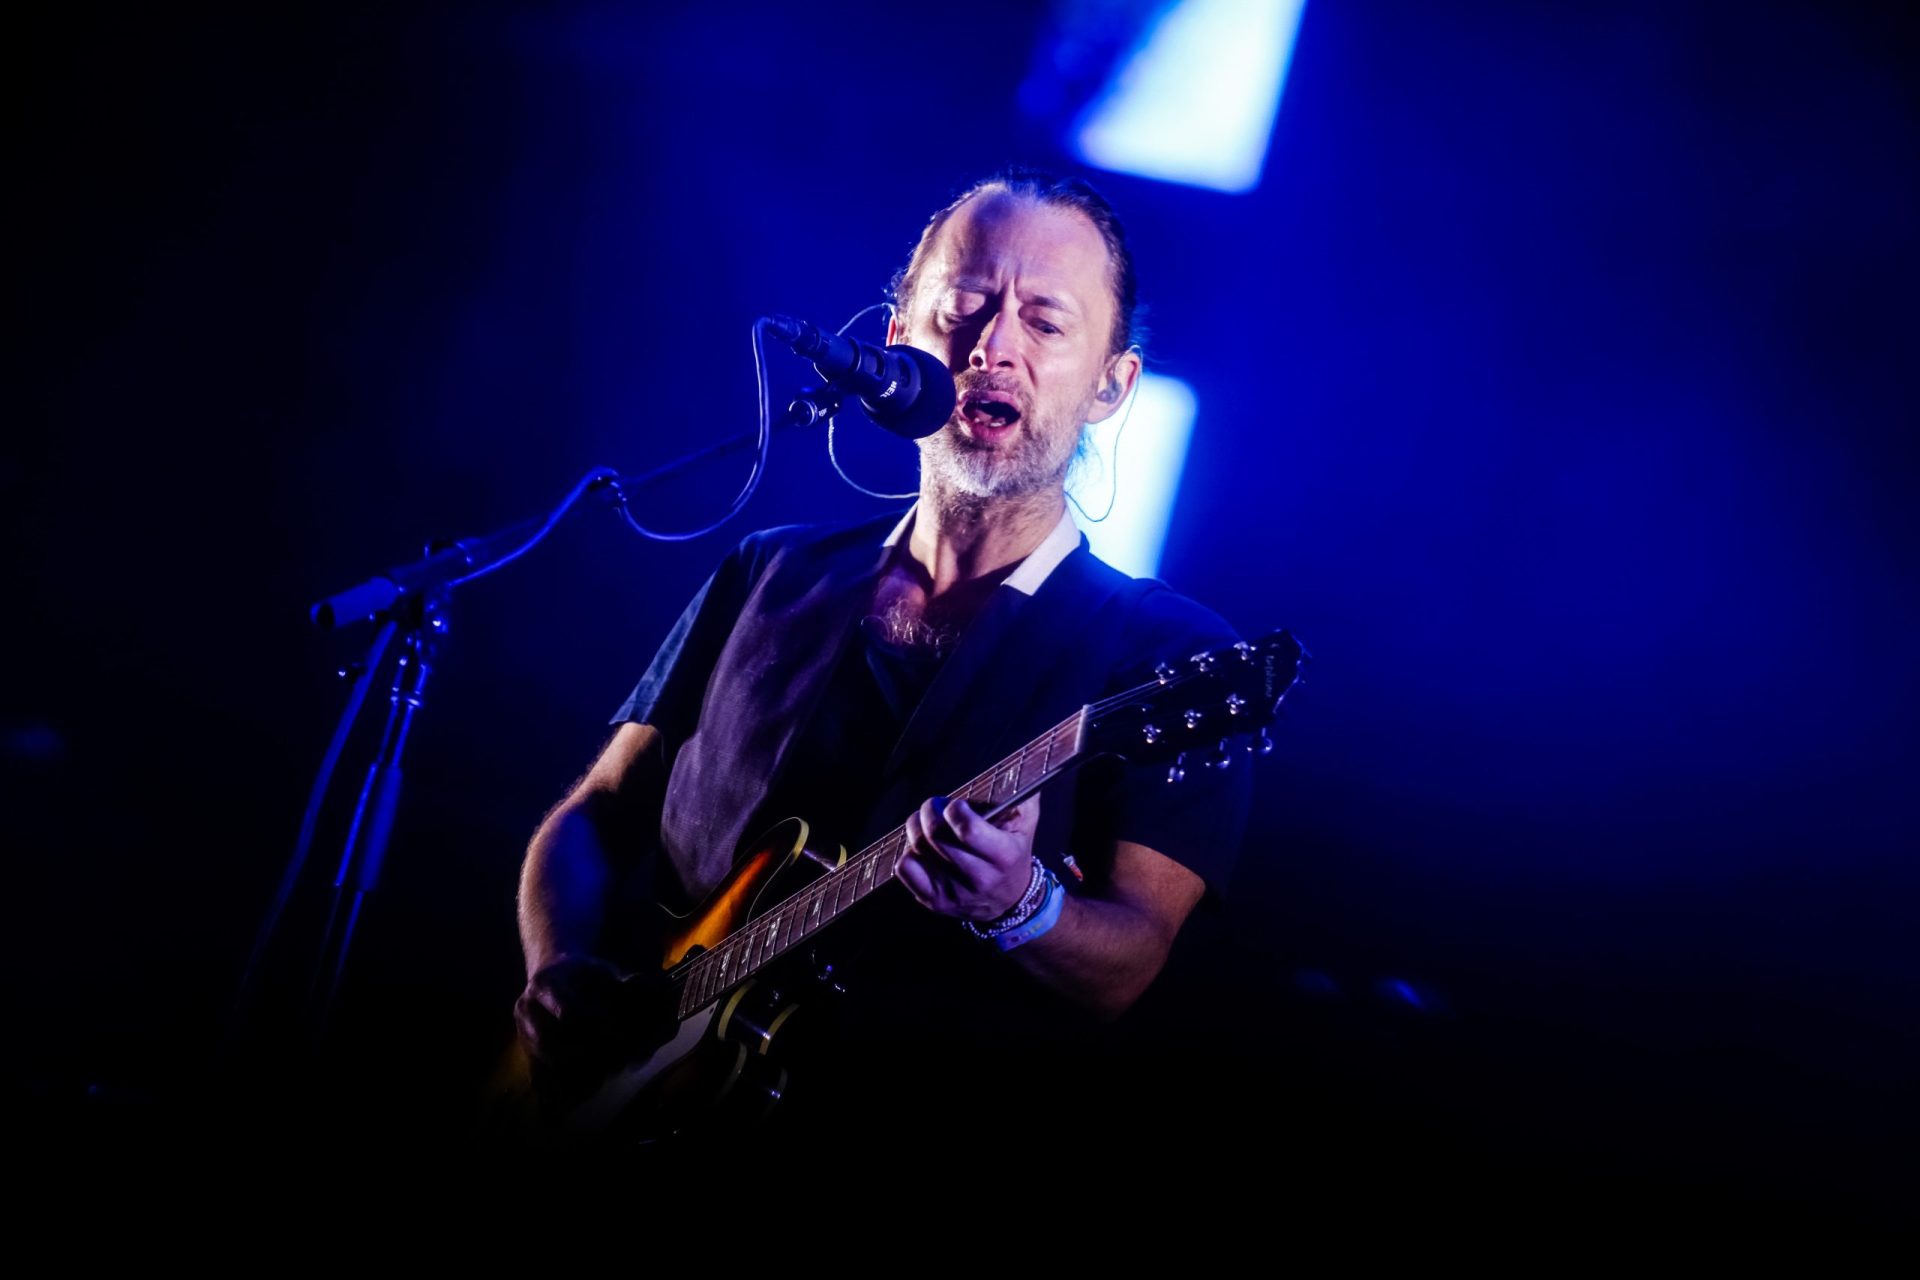 Os Radiohead, “Creep” e Portugal